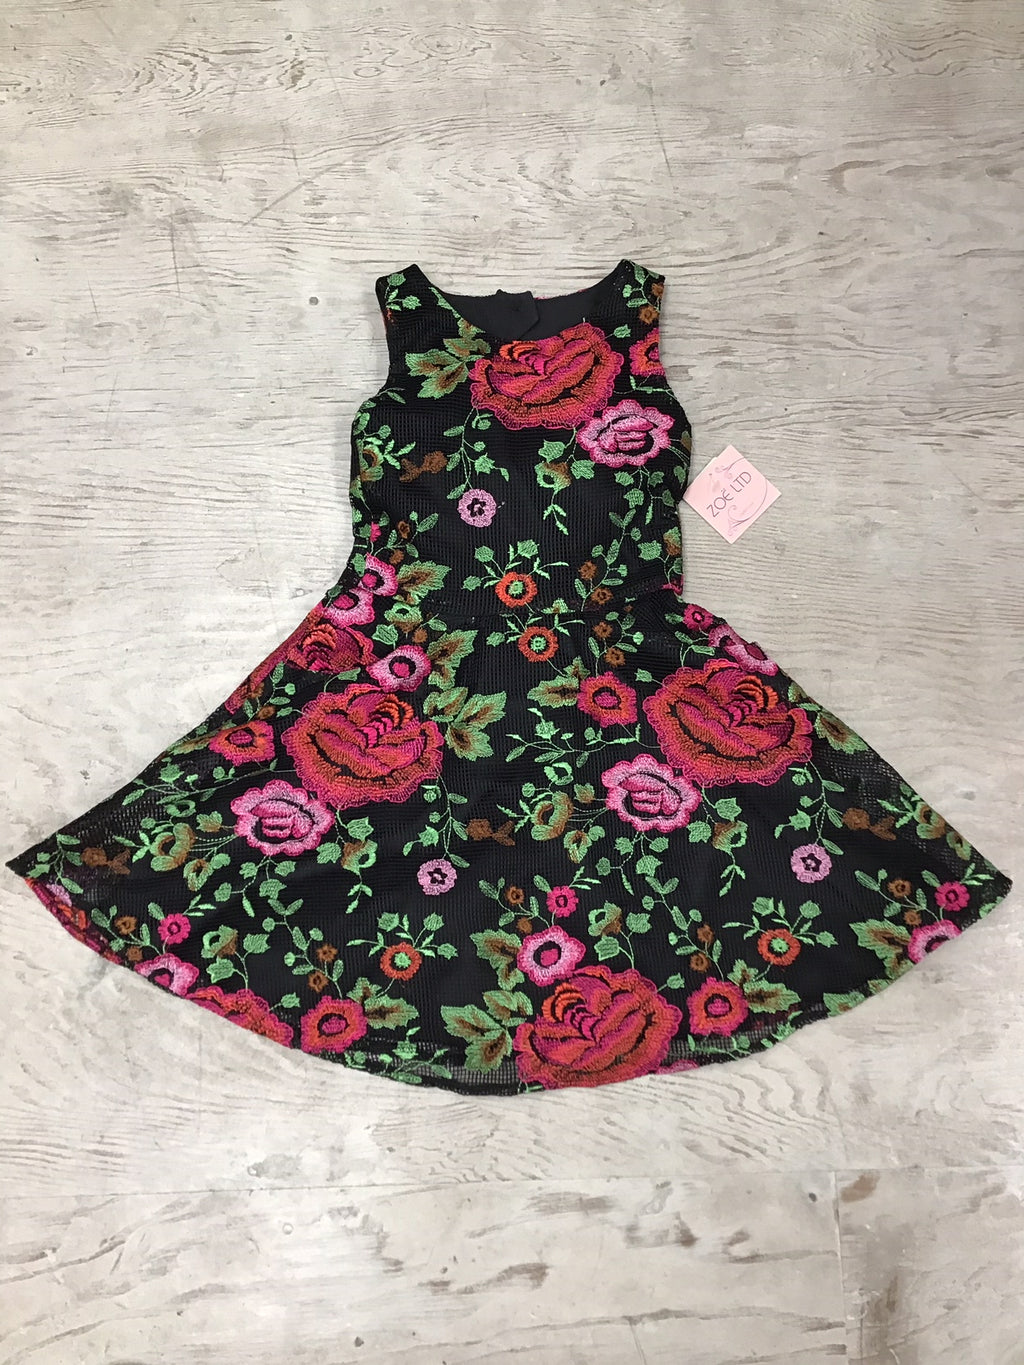 Elegant rosette dress by Zoe Ltd.